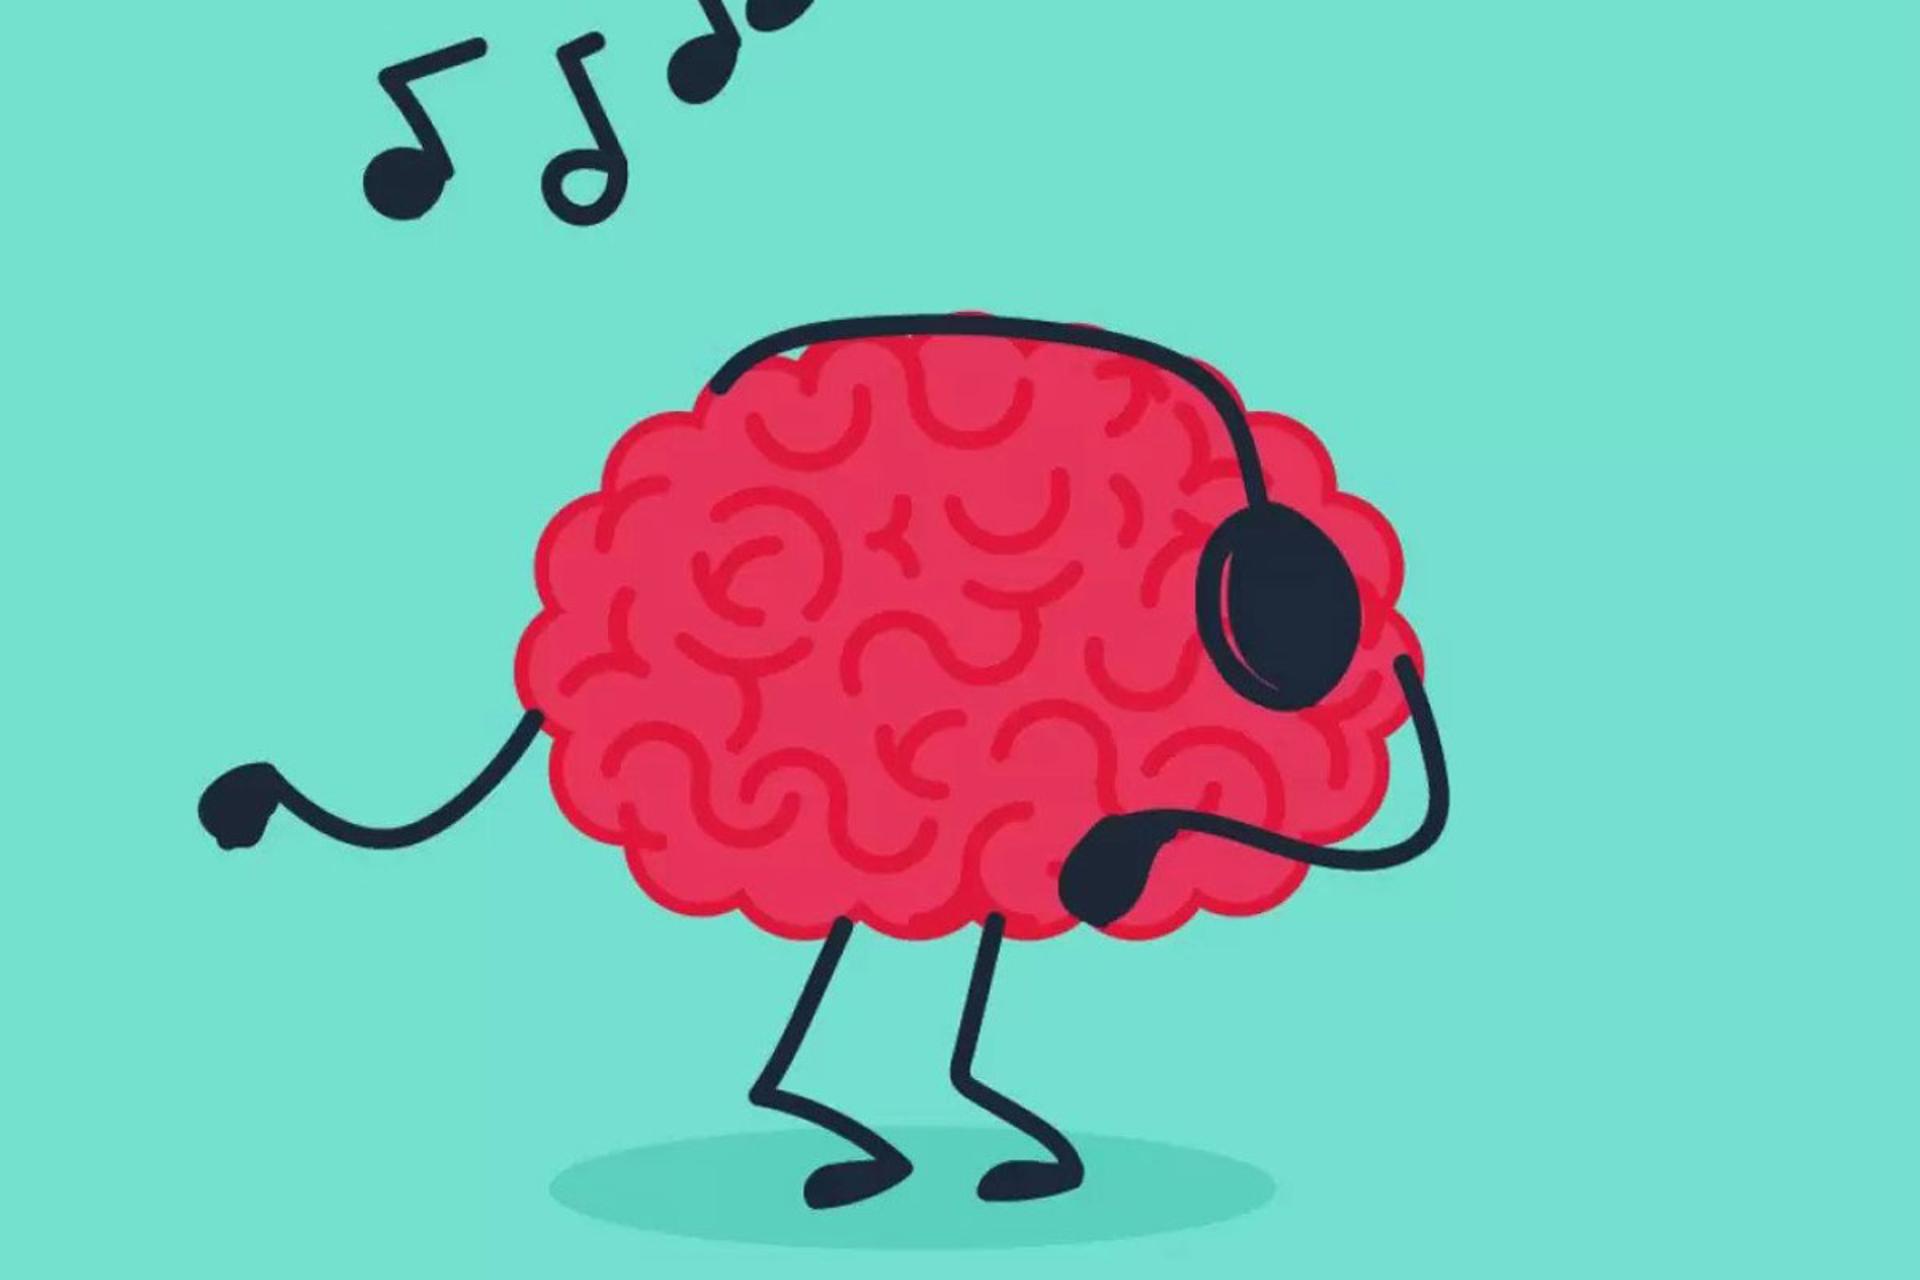 کاراکتر مغز در حال رقصیدن